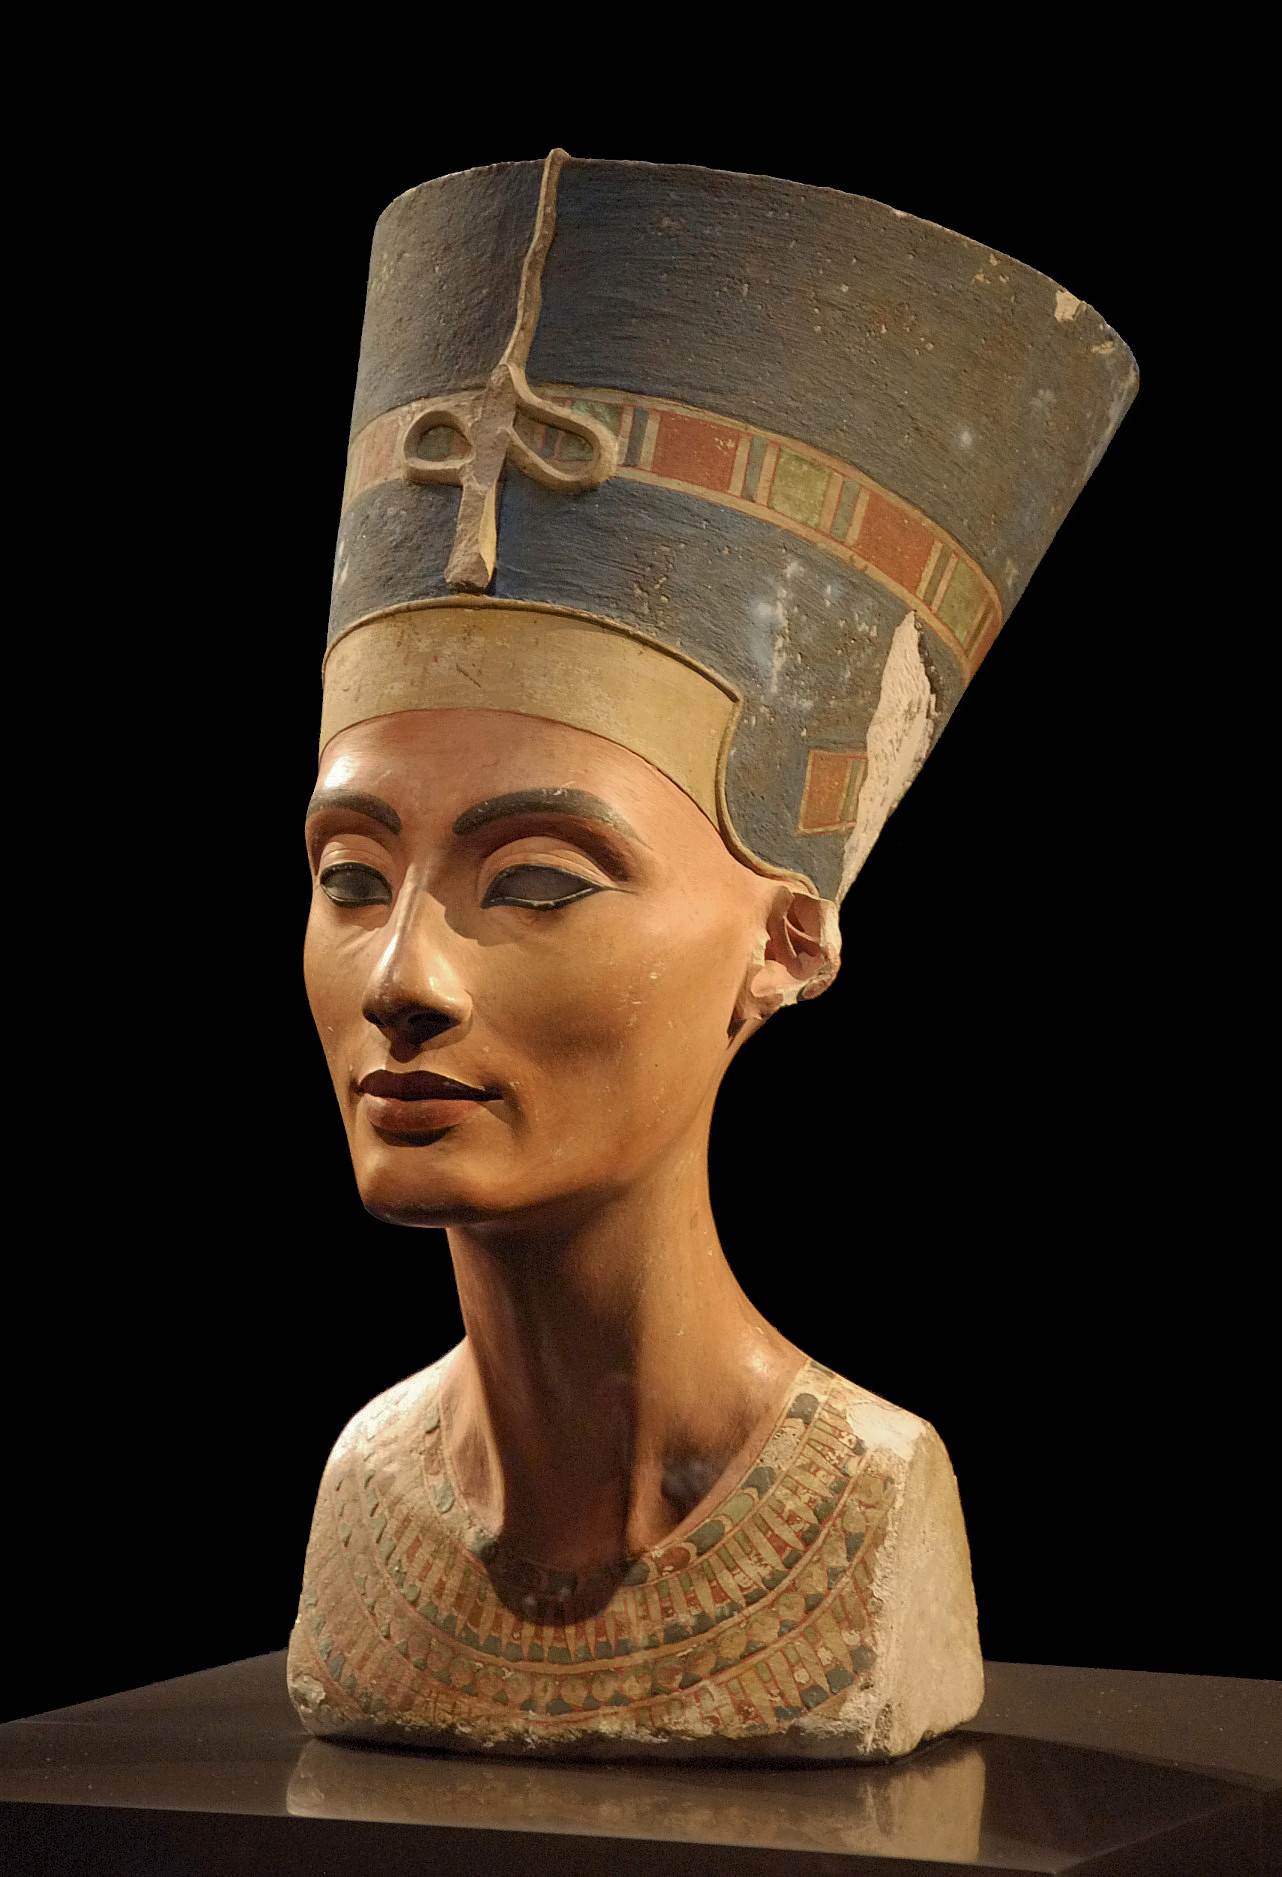 Hình ảnh bức tượng bán thân Nefertiti, được phát hiện tại thủ đô Amarna của Akhenaton vào ngày 6 tháng 1912 năm XNUMX. Bức tượng bán thân ở Bảo tàng Neues, Berlin.